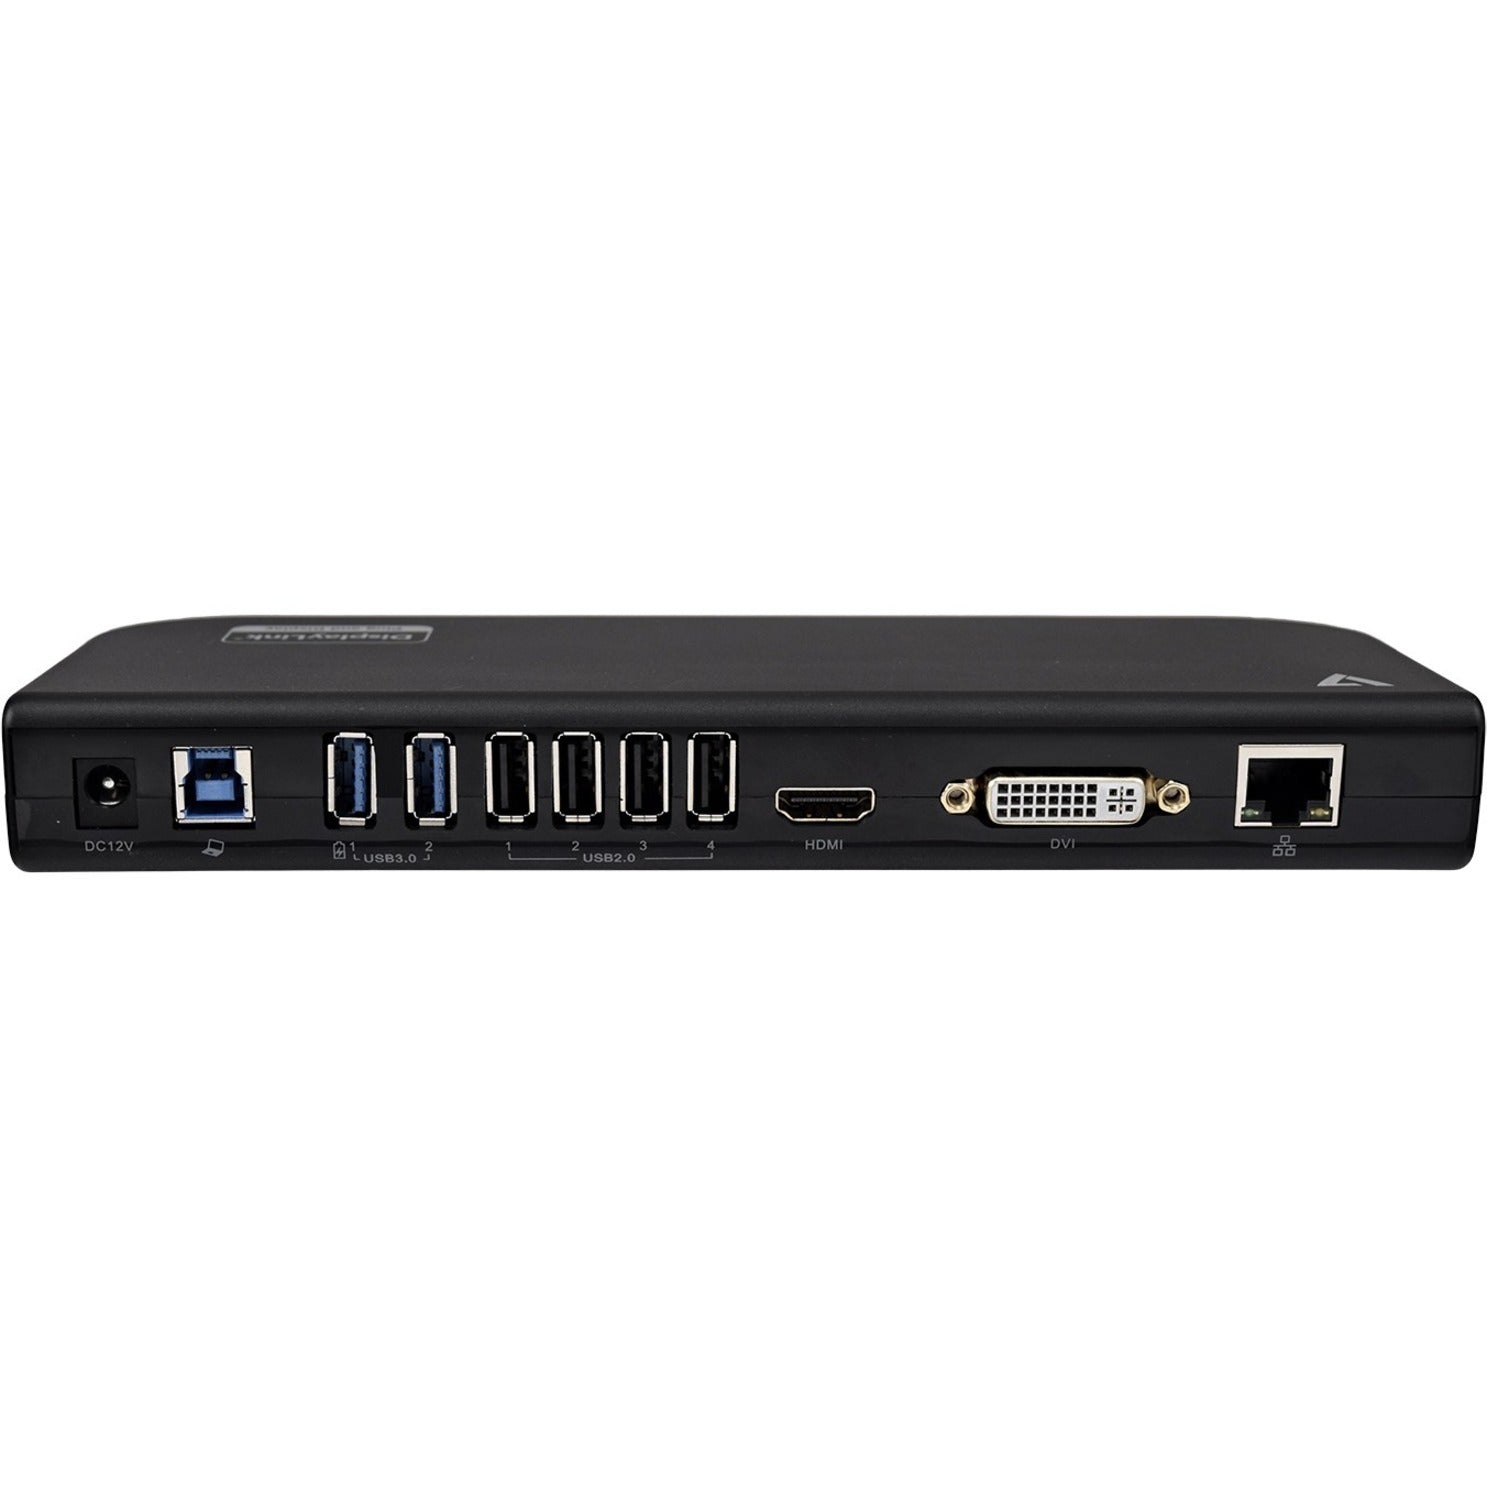 V7 UDDS2 USB Dual DisplayLink Docking Station 2K QHD 6 USB Ports Ethernet